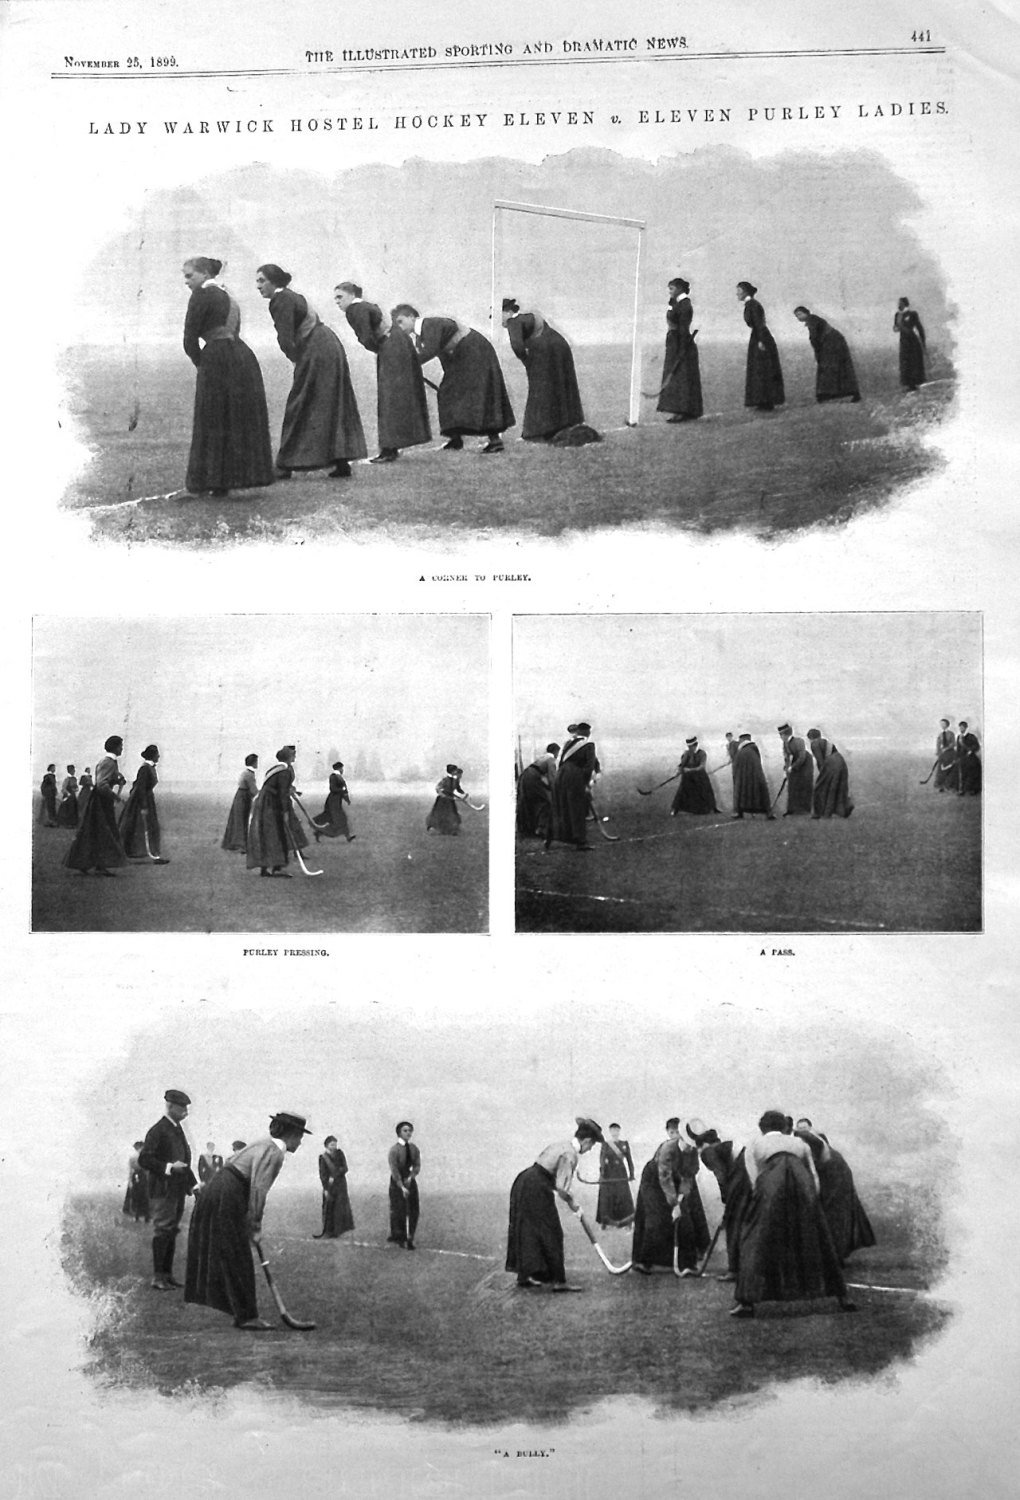 Lady Warwick Hostel Hockey Eleven v. Eleven Purley Ladies. 1899.